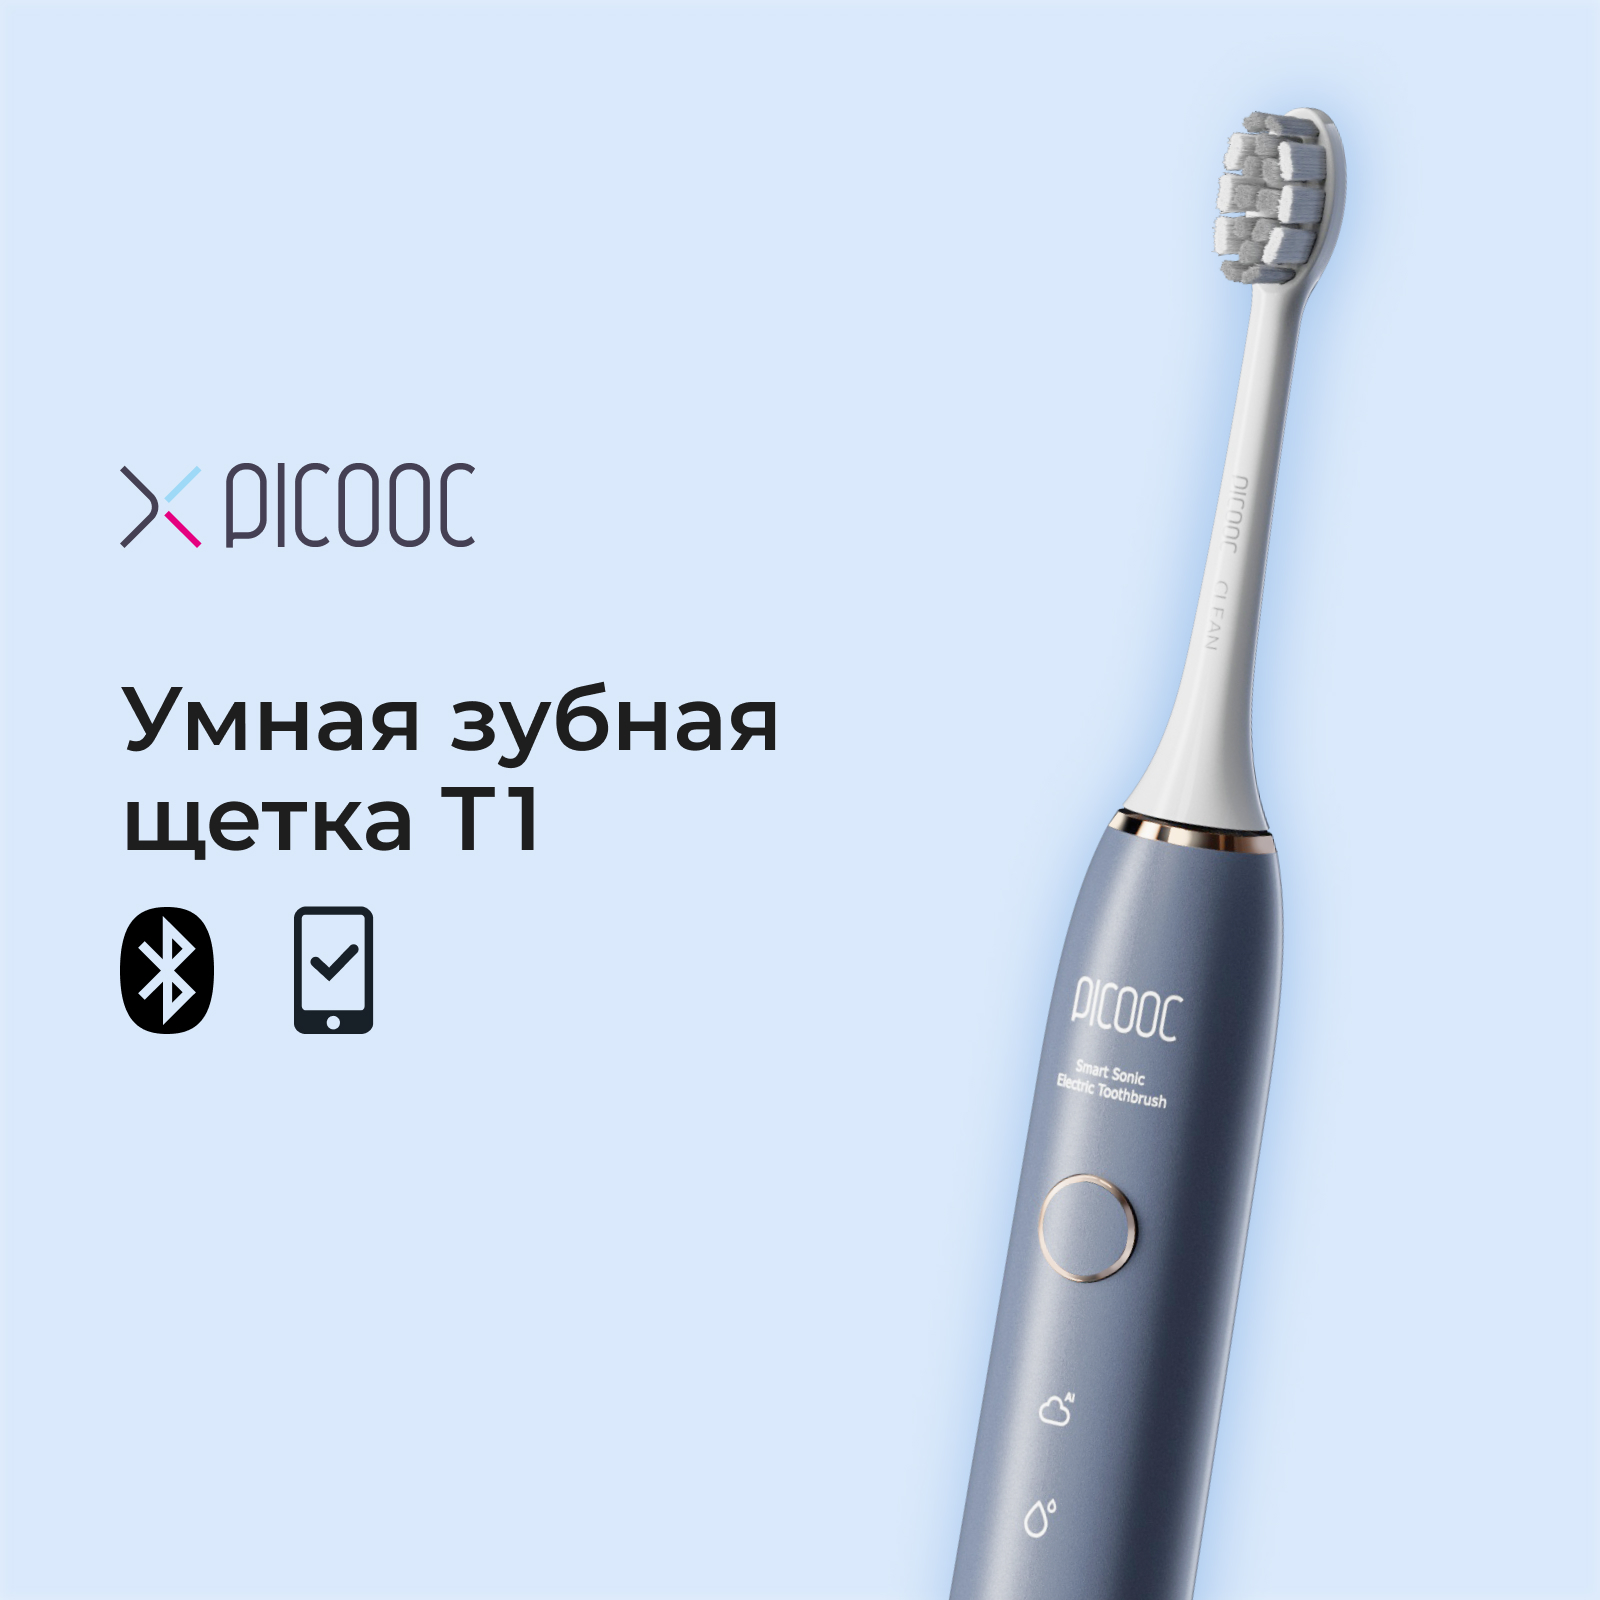 Электрическая зубная щетка Picooc T1 синяя умный монитор артериального давления picooc x1 pro